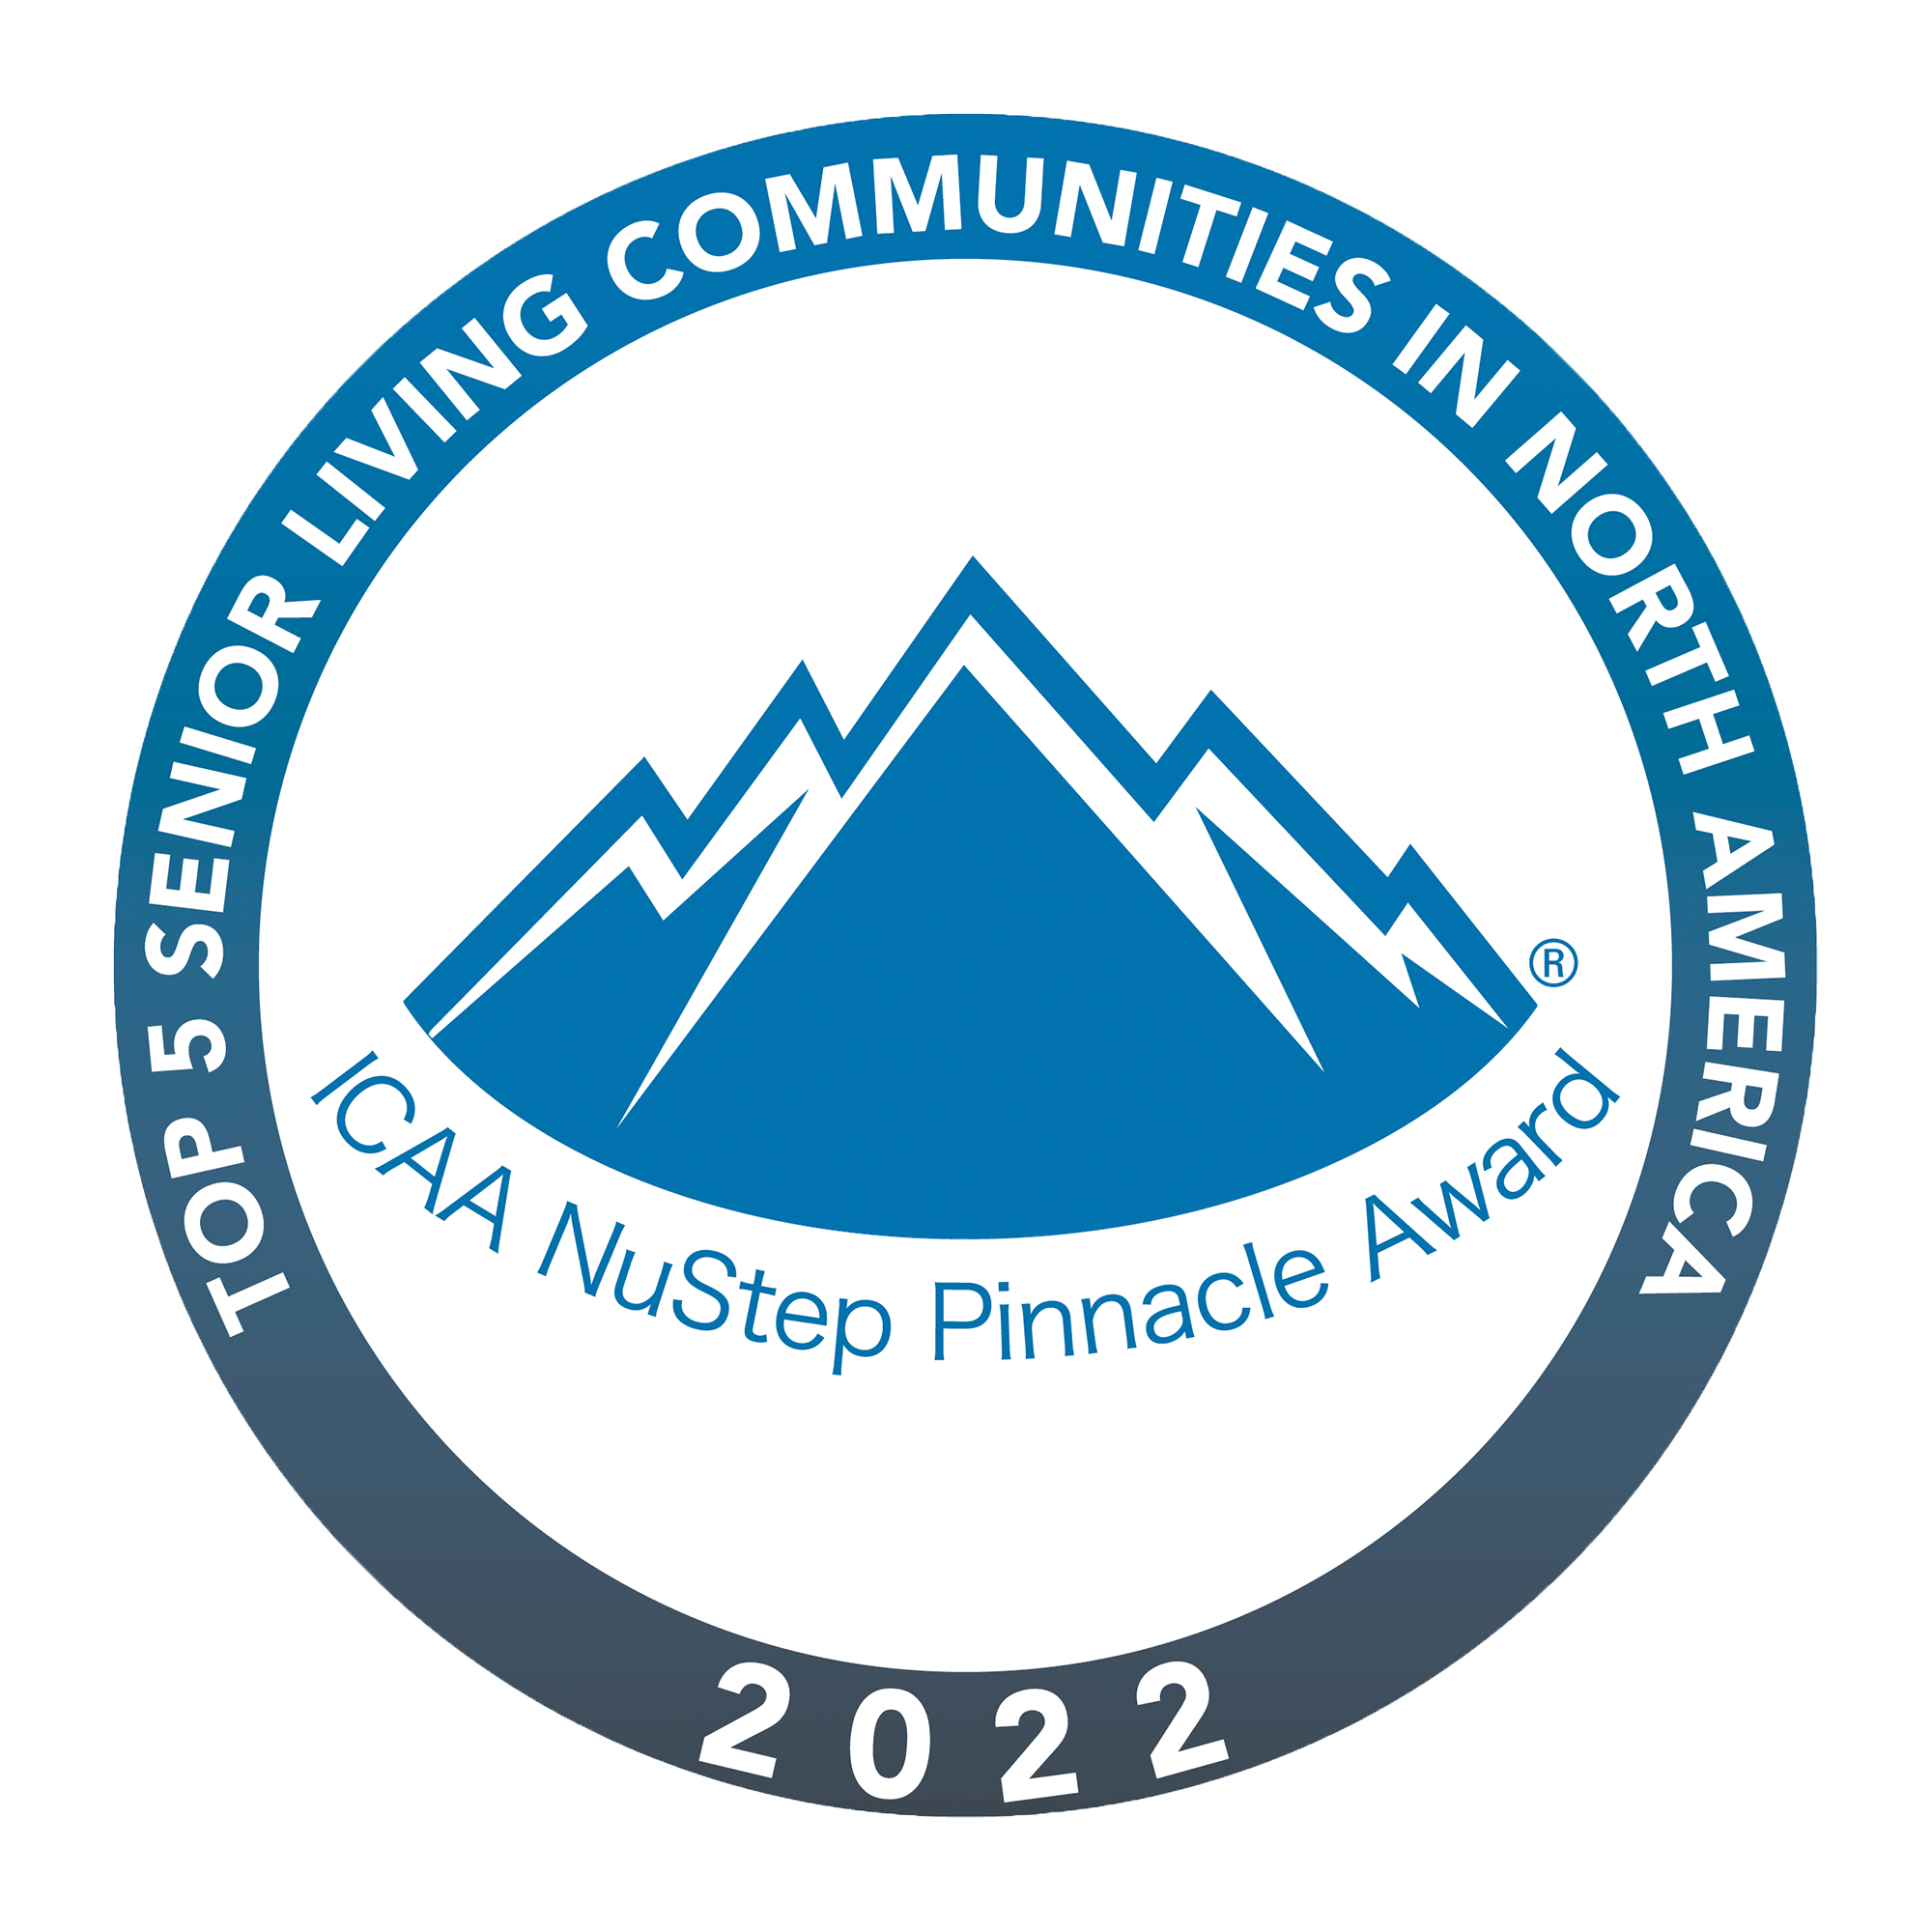 ICAA NuStep Pinnacle Award 2022 - Top 5 Senior Living Communities in North America